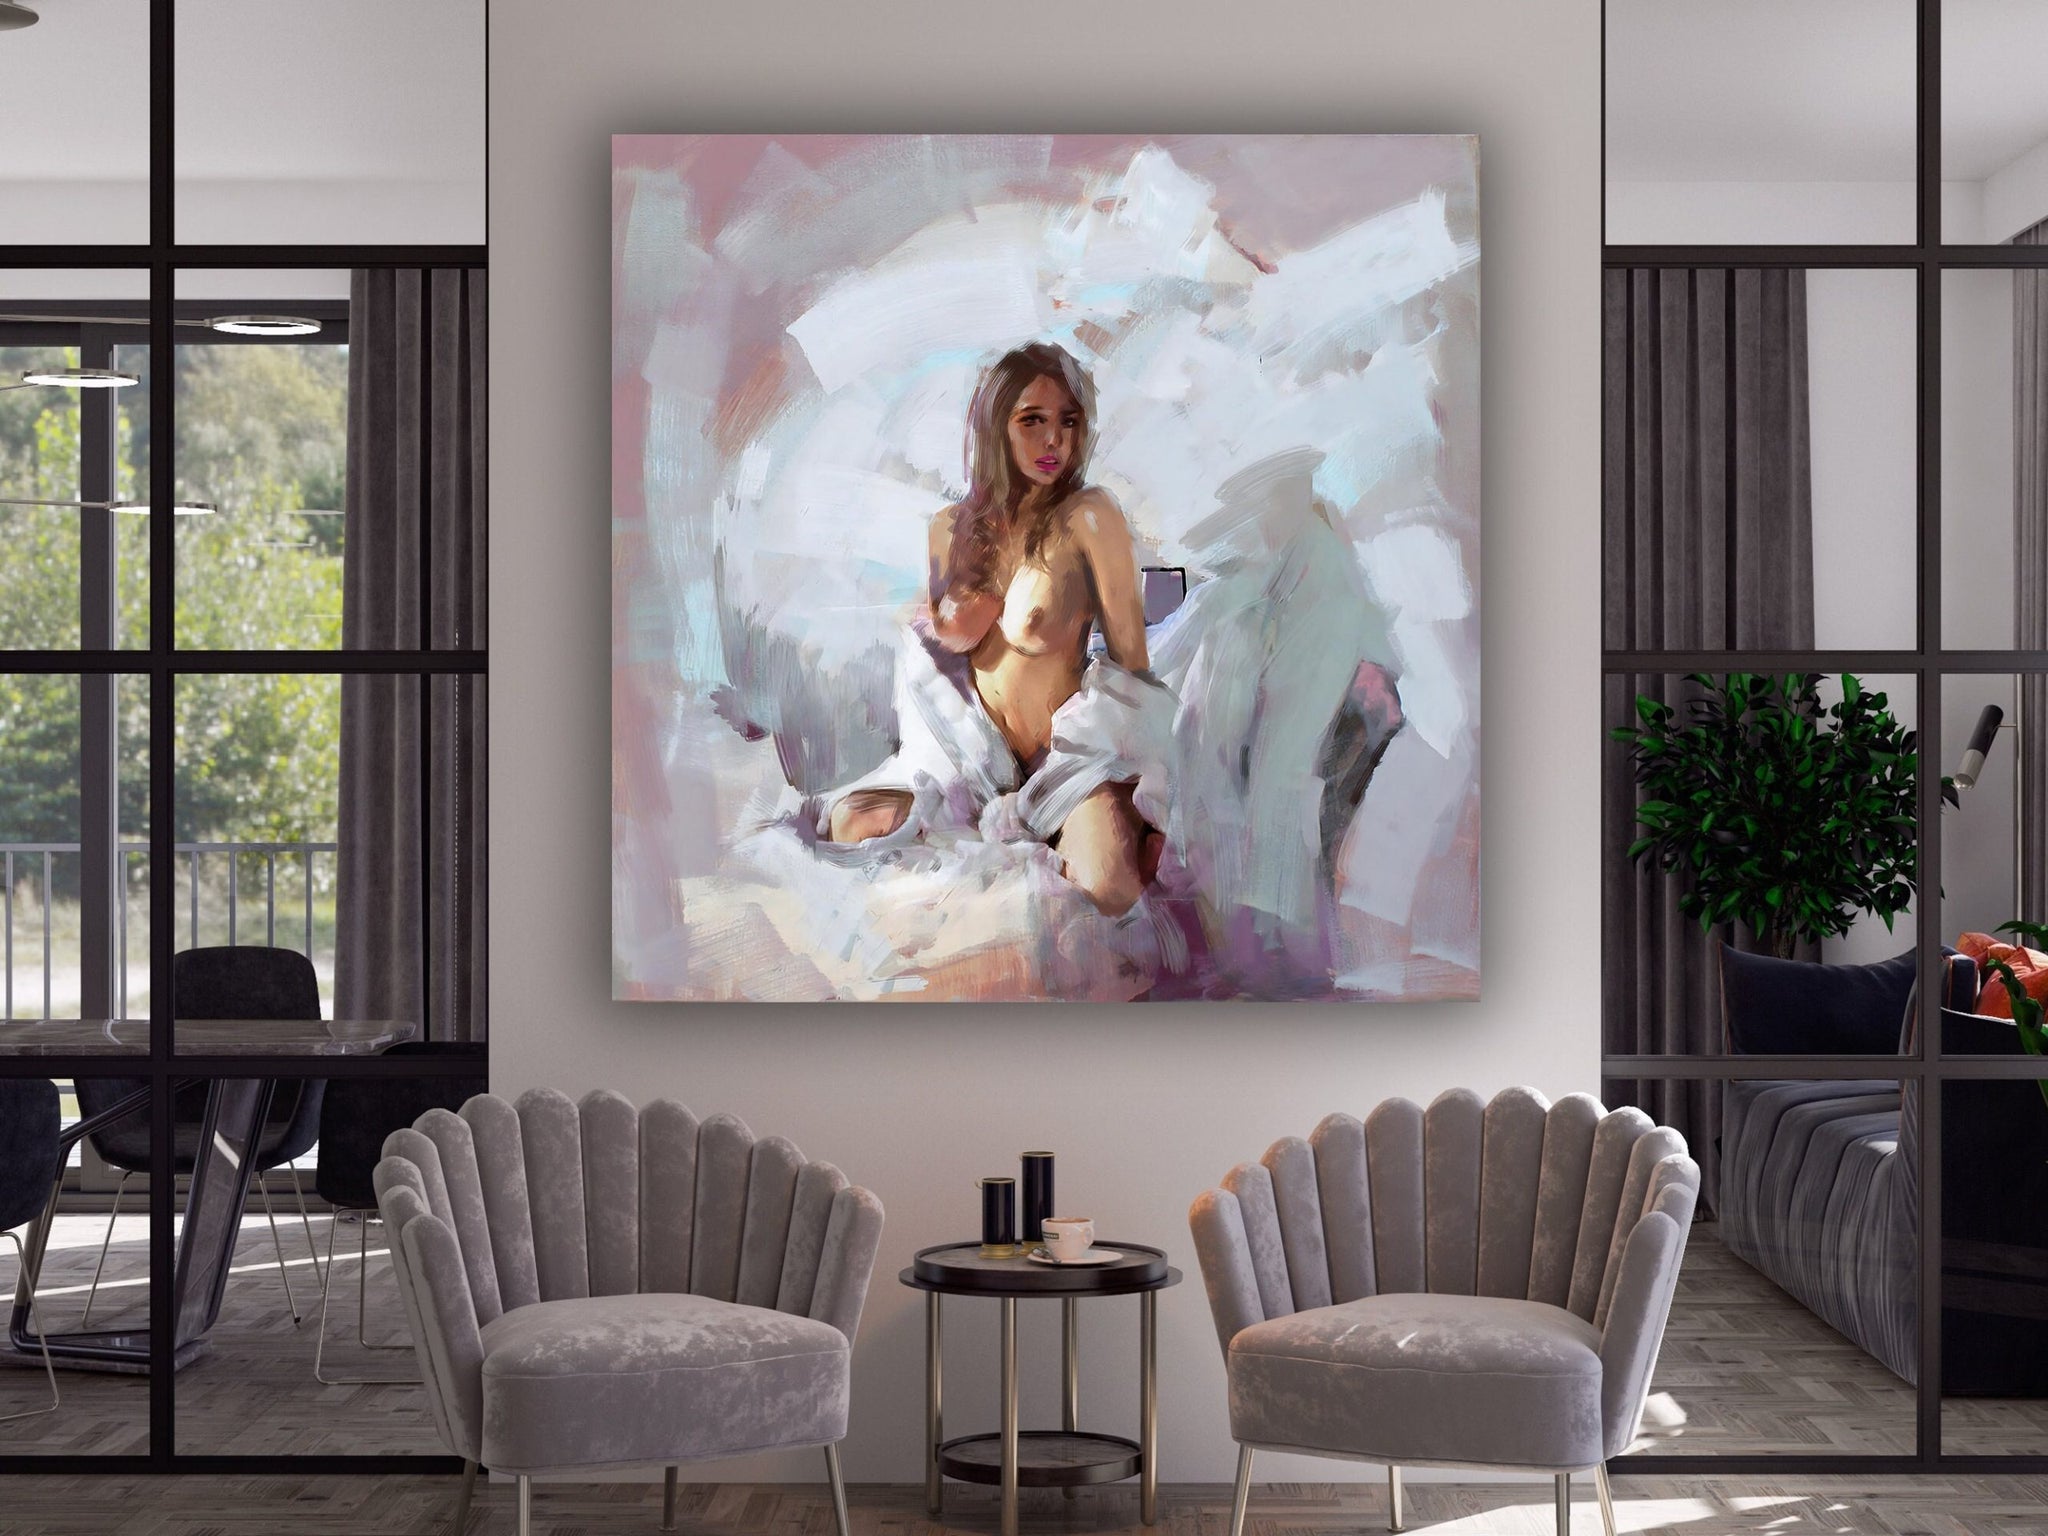 Naked Woman Painting Print, Naked Woman Wall Art, Bedroom Canvas Art, Sensual Photo Wall Decor, Sensual Photo Art